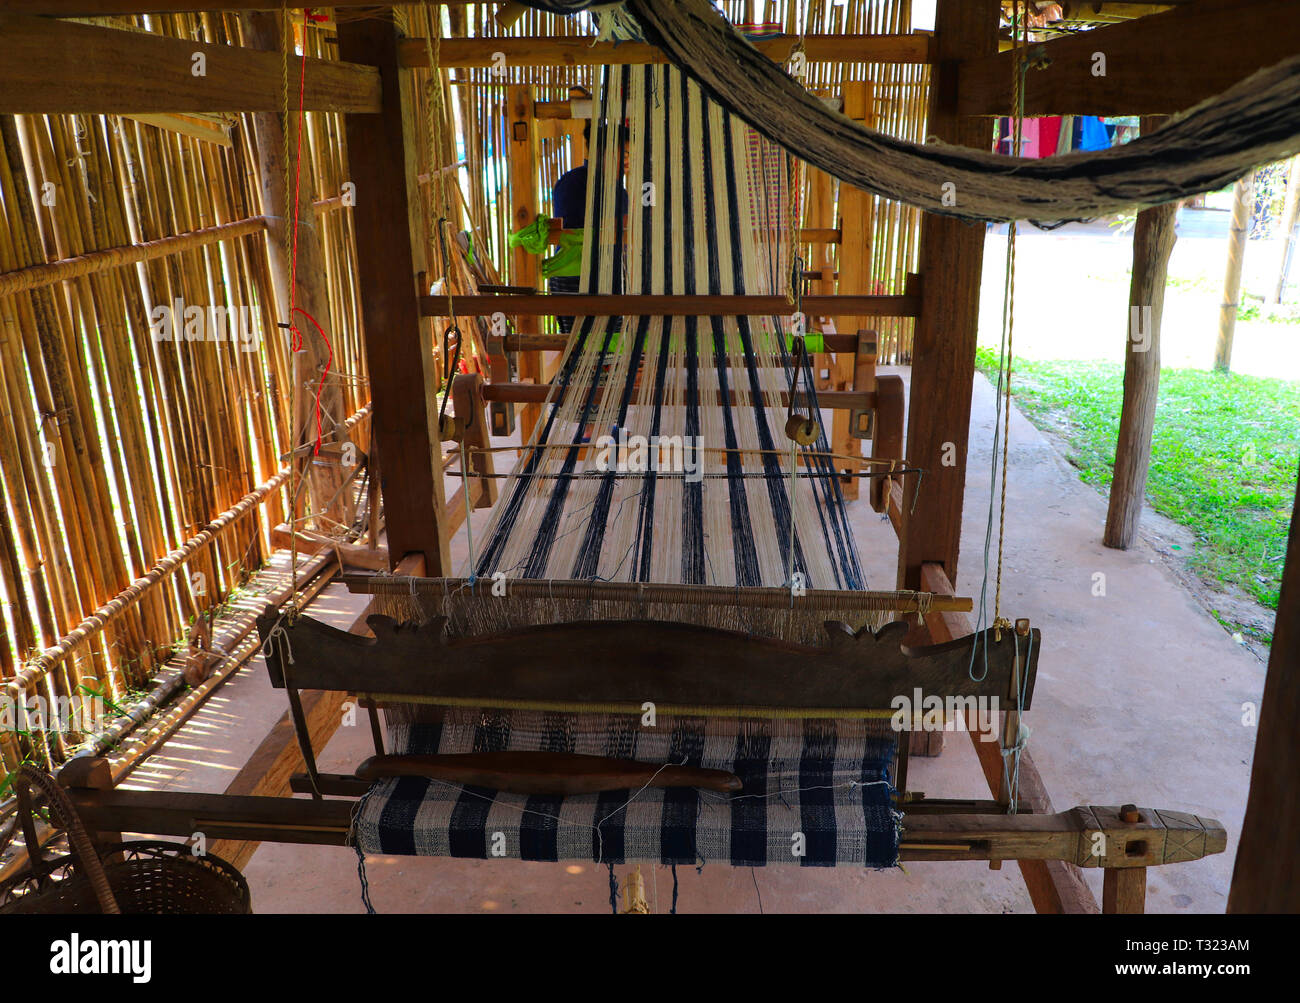 Métier à tisser en bois avec motif coloré et le tissage du textile - navette concept d'artisanat traditionnel Banque D'Images